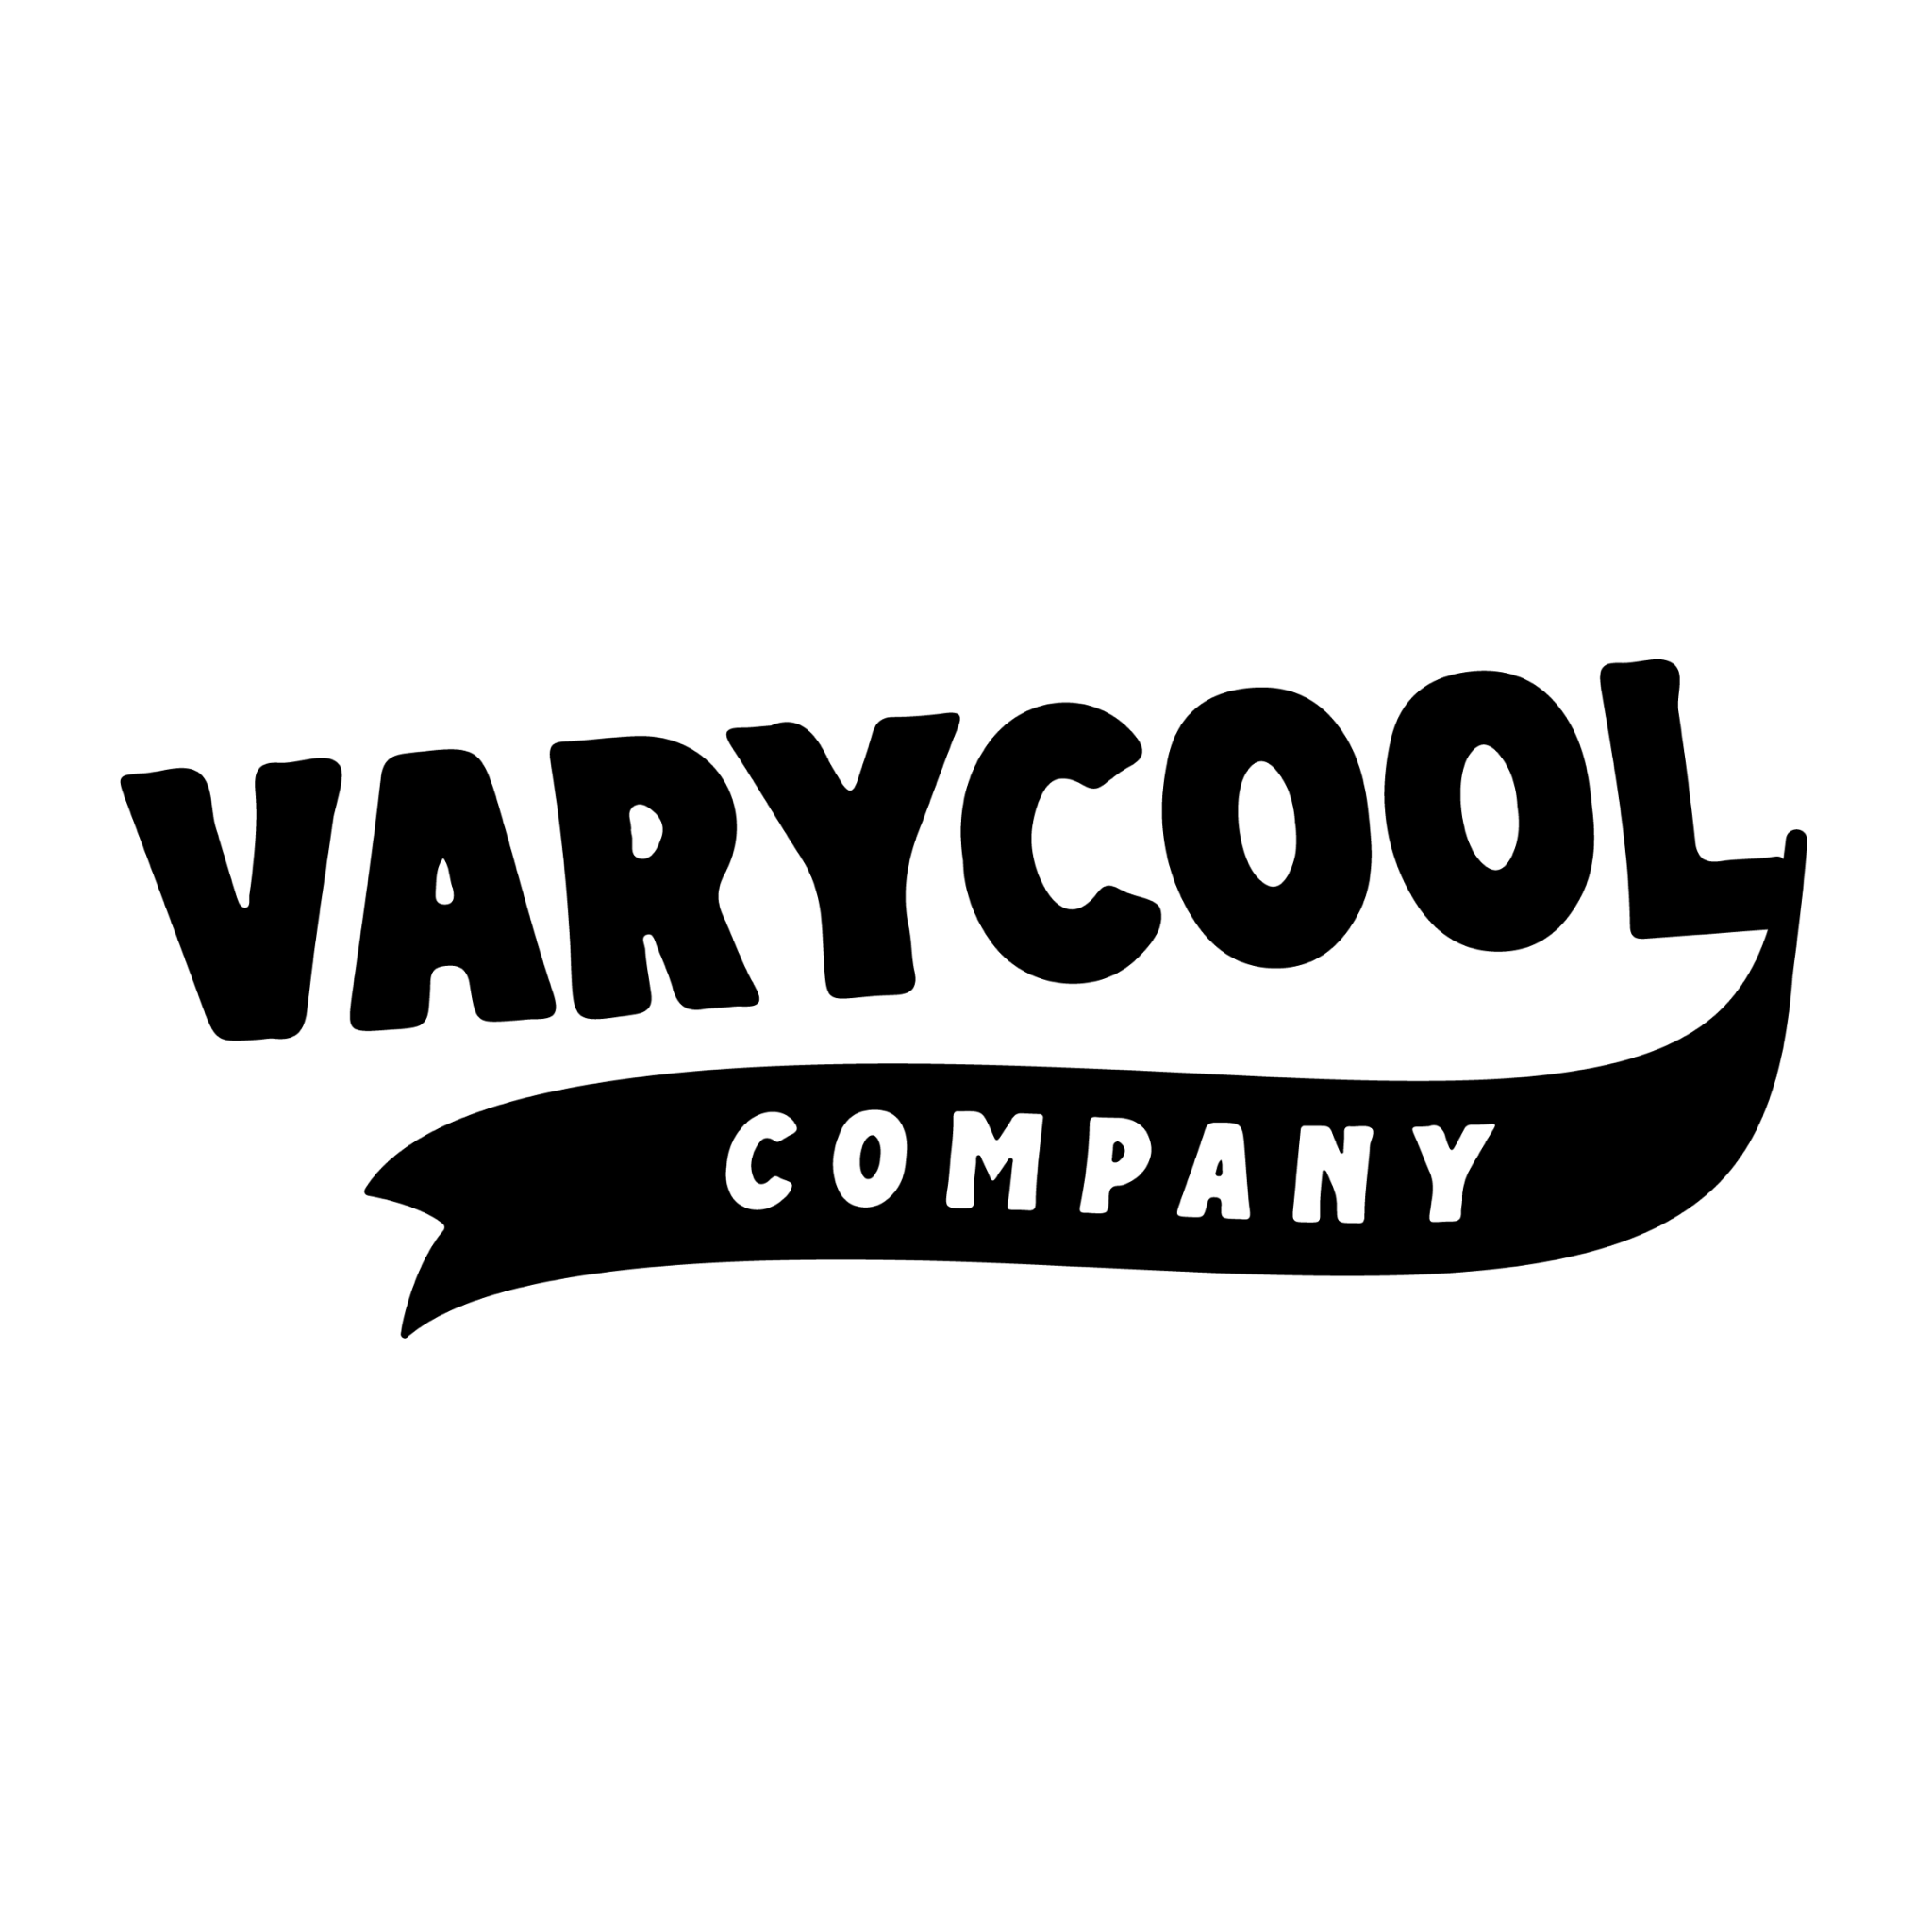 Varycool Co